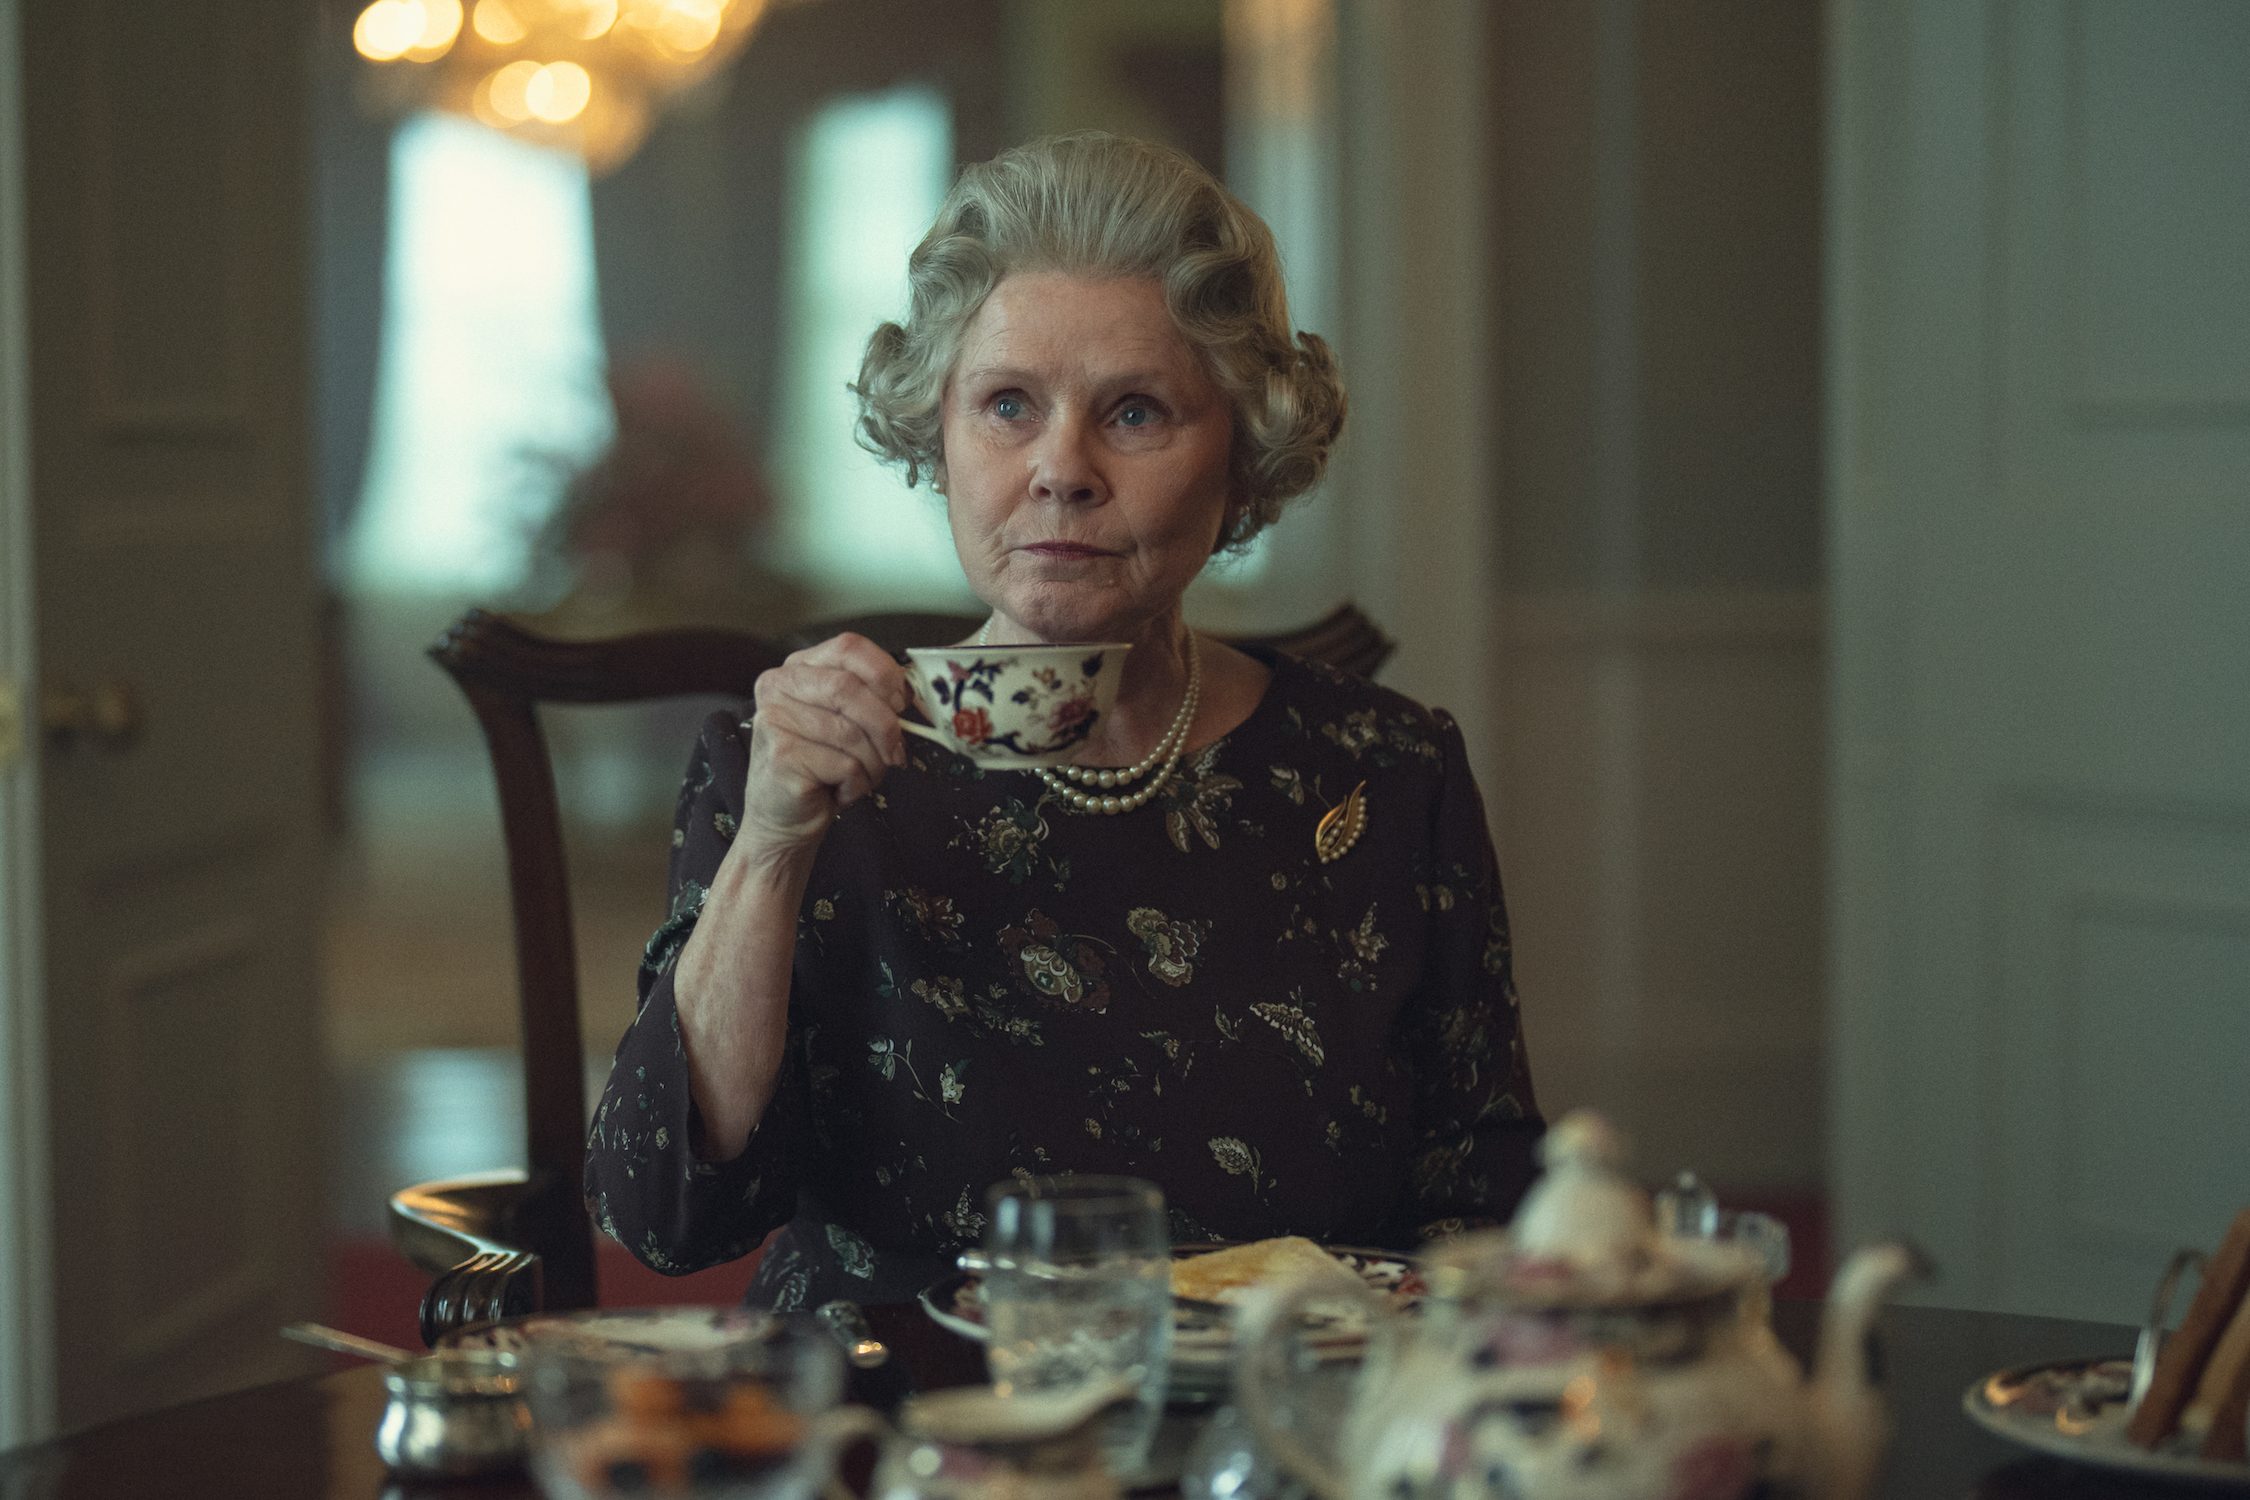 La reina Isabel se sienta a la mesa y sostiene su taza de té.